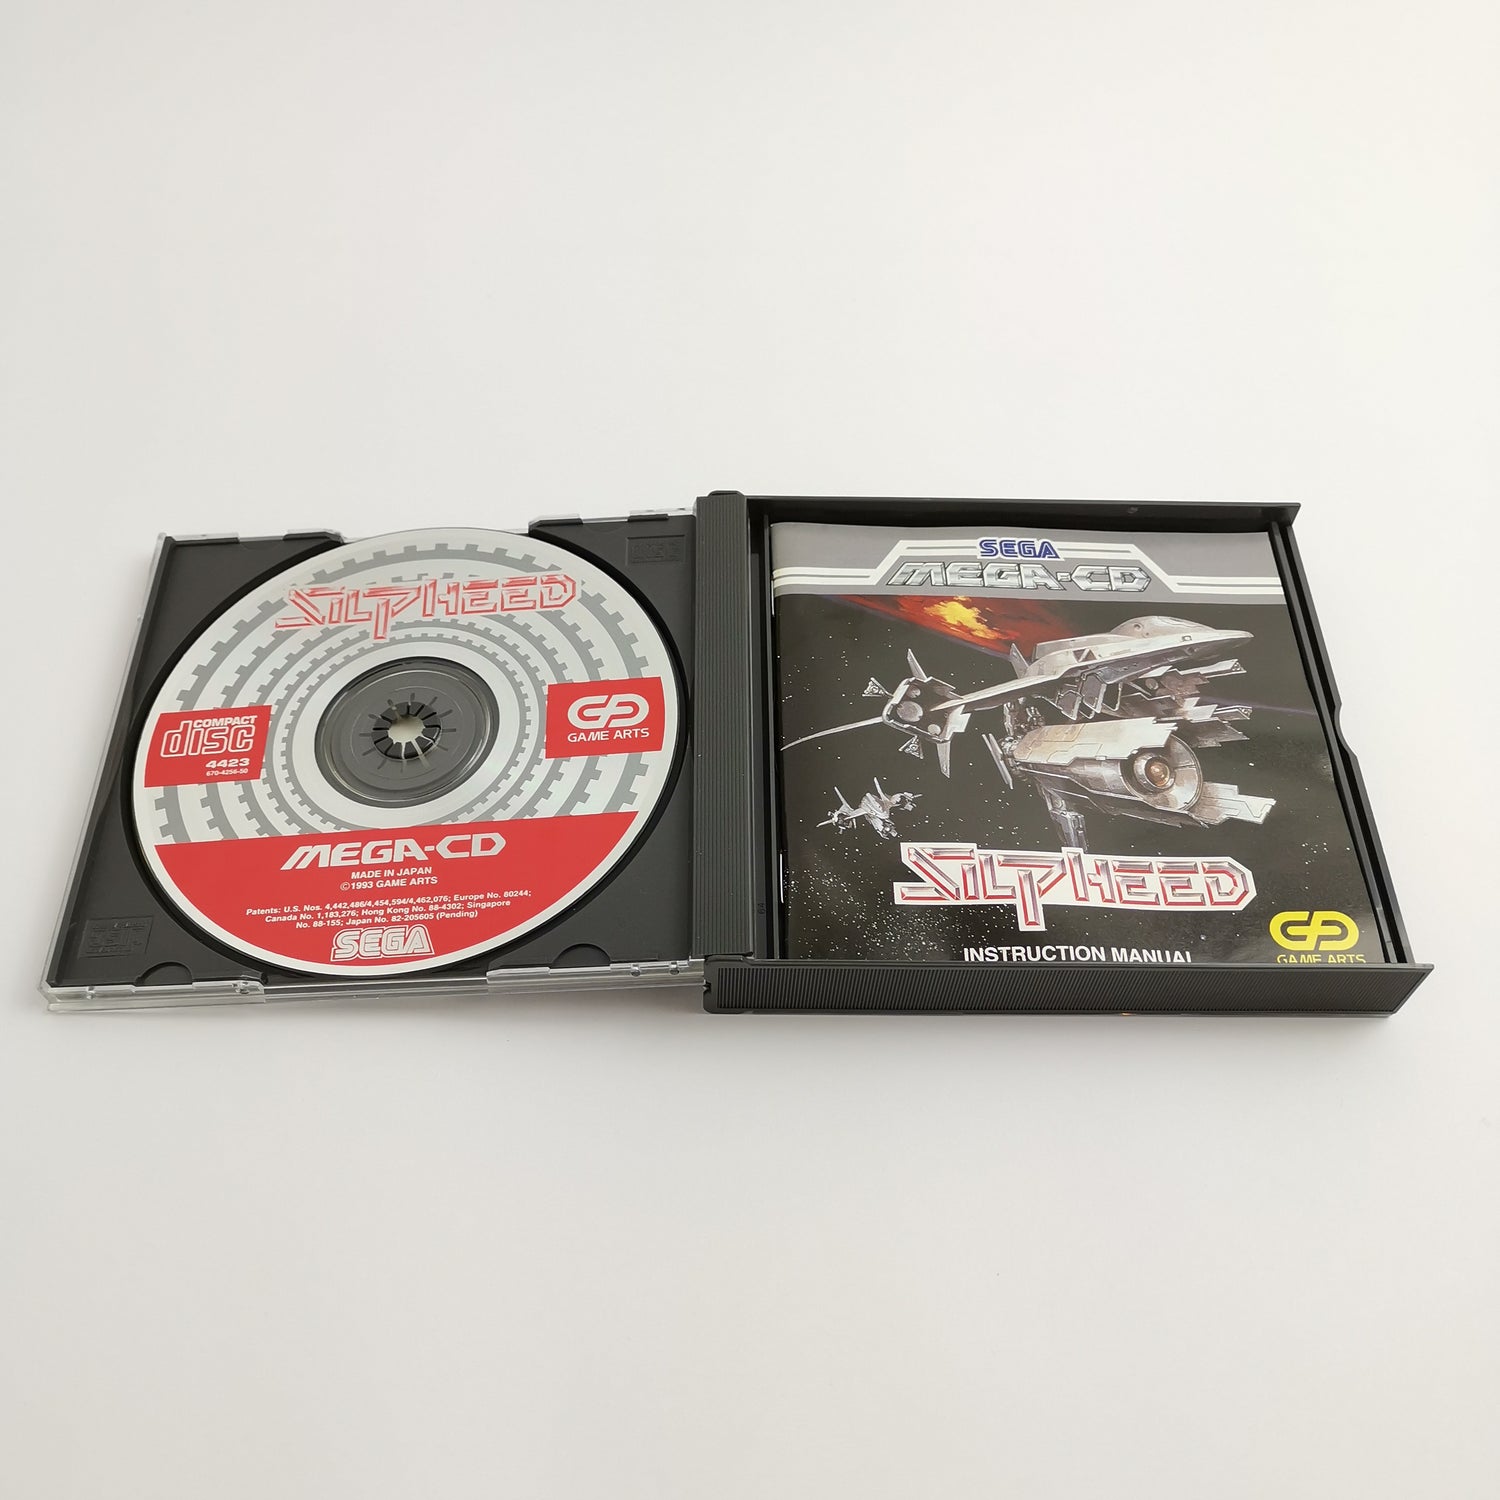 Sega Mega-CD Spiel 